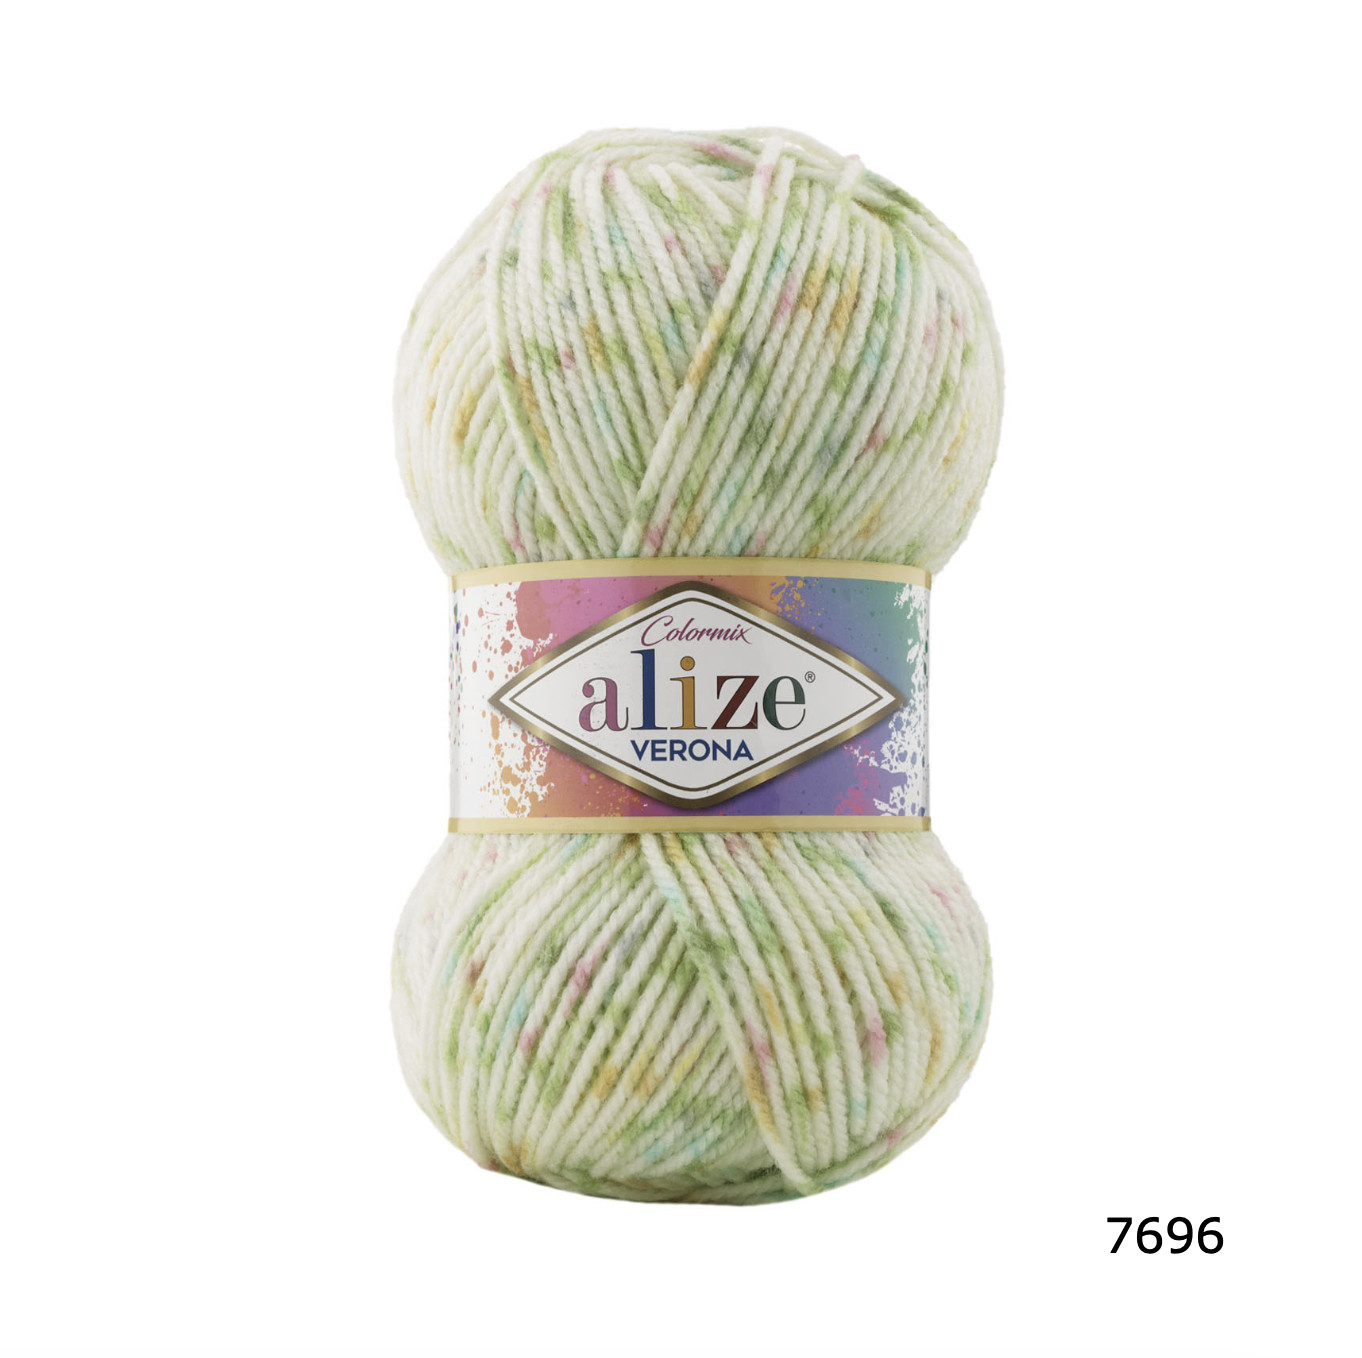 Cuộn len nhộm phẩy VERONA hãng Alize Yarns đan móc khăn, áo mùa đông cực đẹp